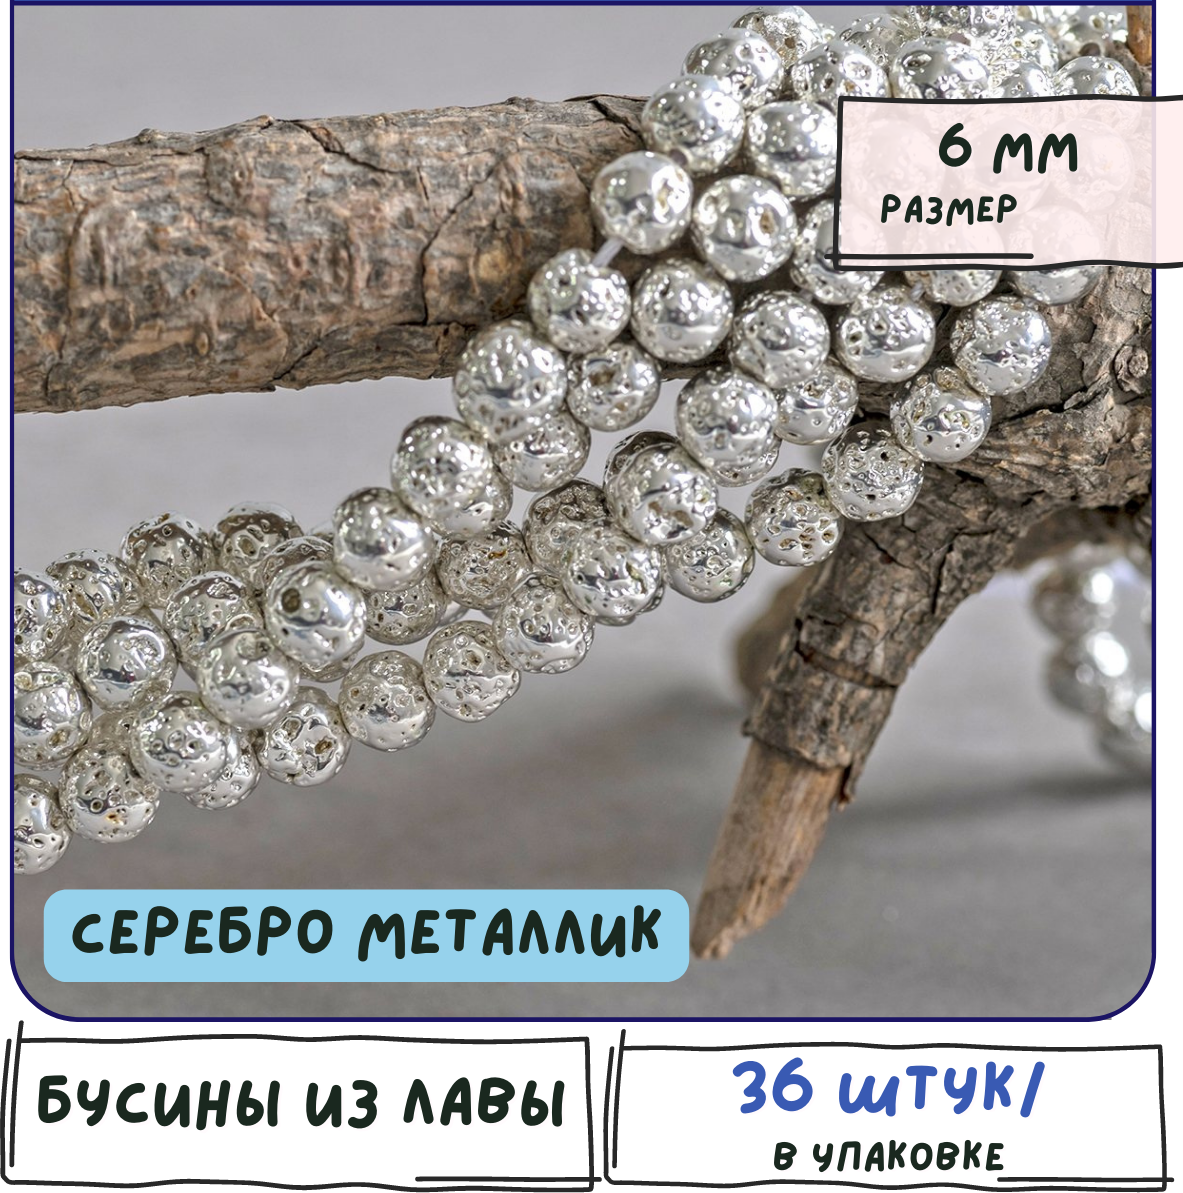 Лава Бусины натуральные 36 шт, цвет серебряный металлик, размер 6 мм